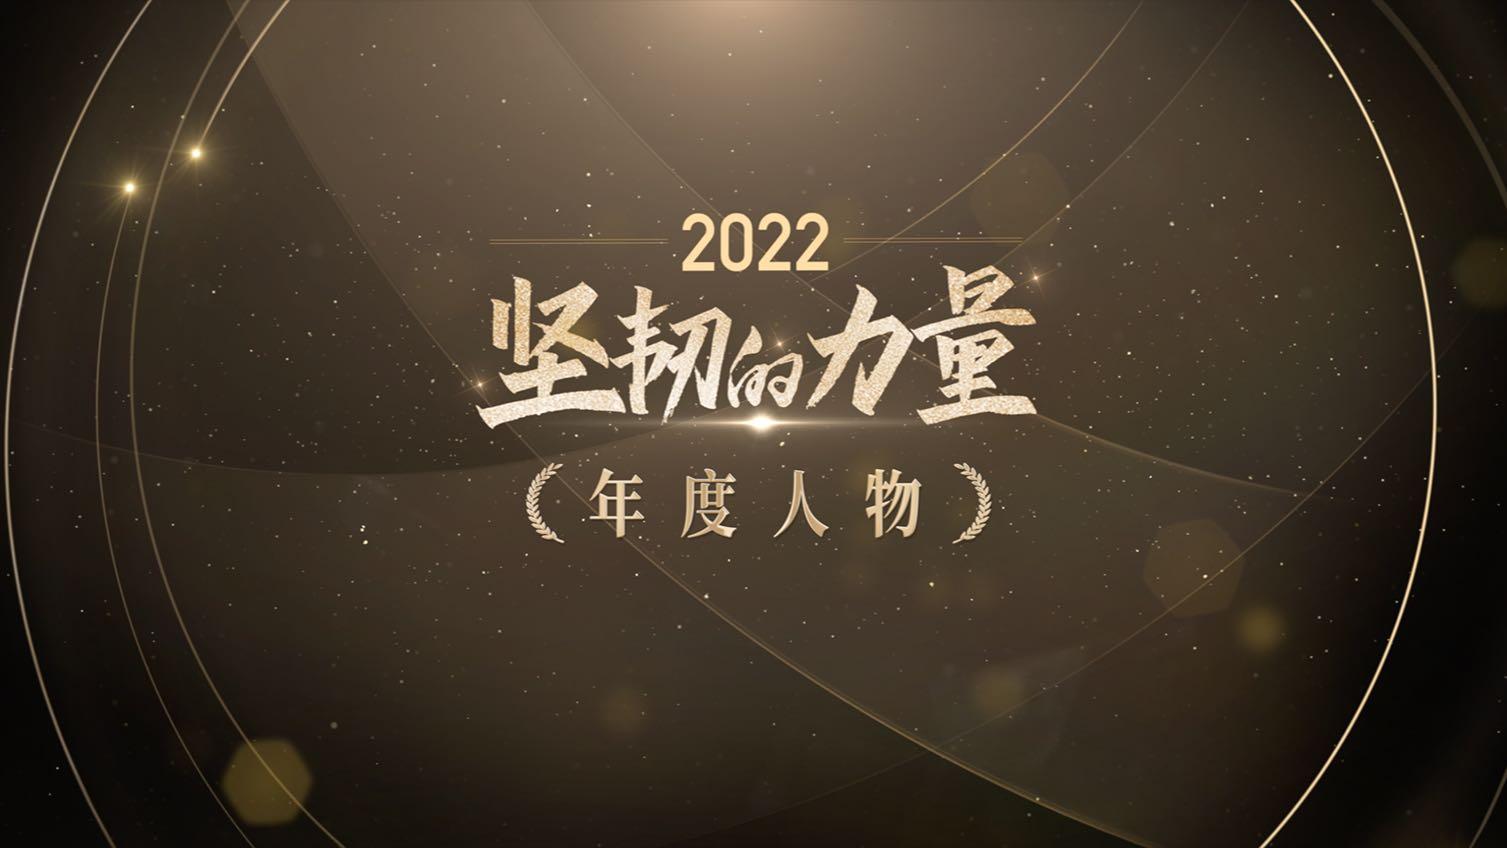 2022中国慈善家年度人物揭晓短片丨莫言 张伯礼 海清 陈越光 蔡磊 郝南 何军